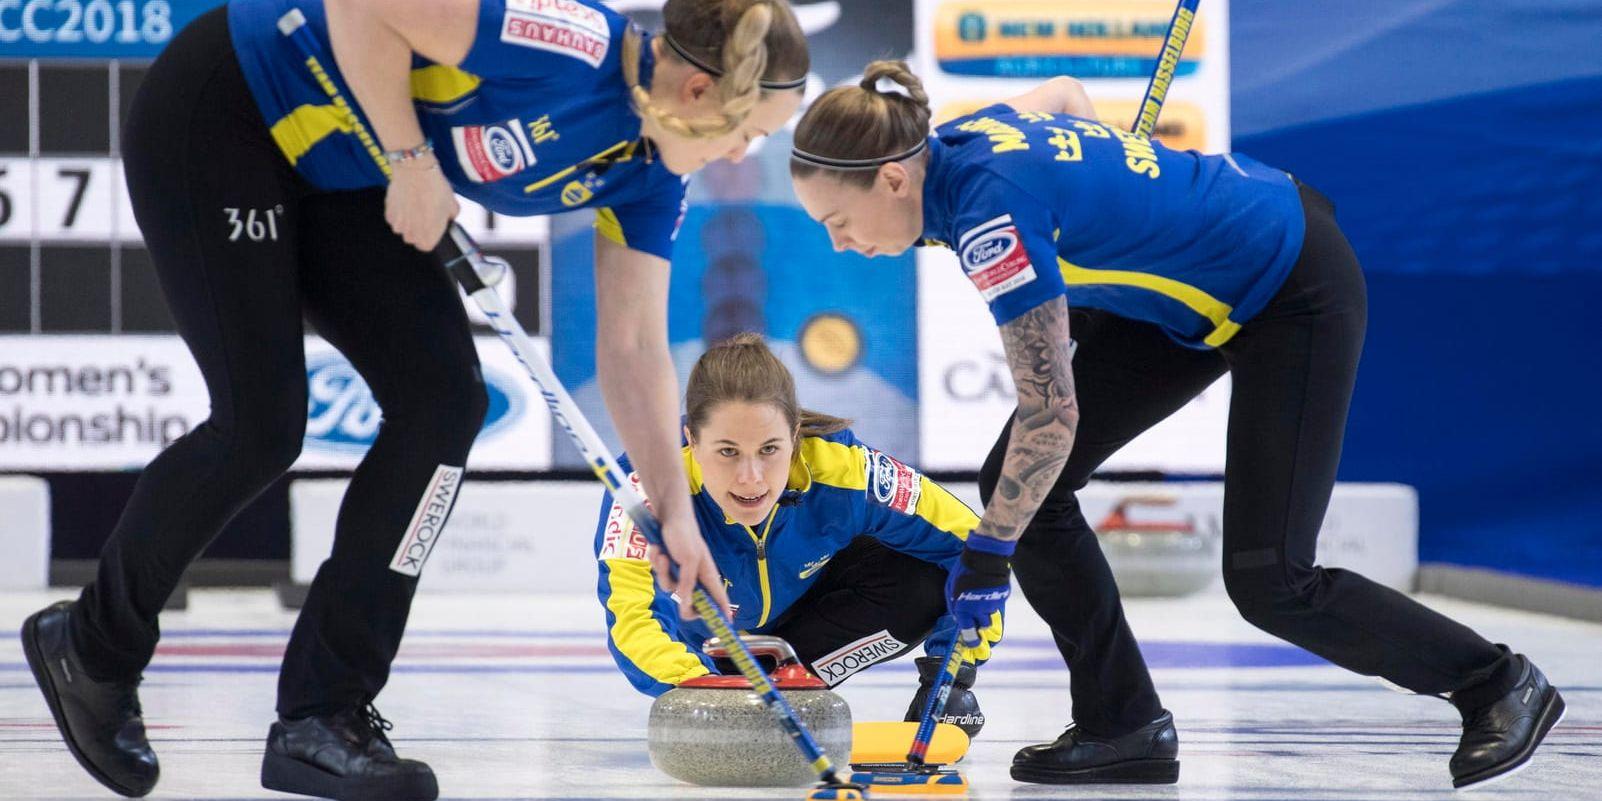 Svenska curlingdamerna tog hem silvret i curling-VM efter förlusten mot Kanada.